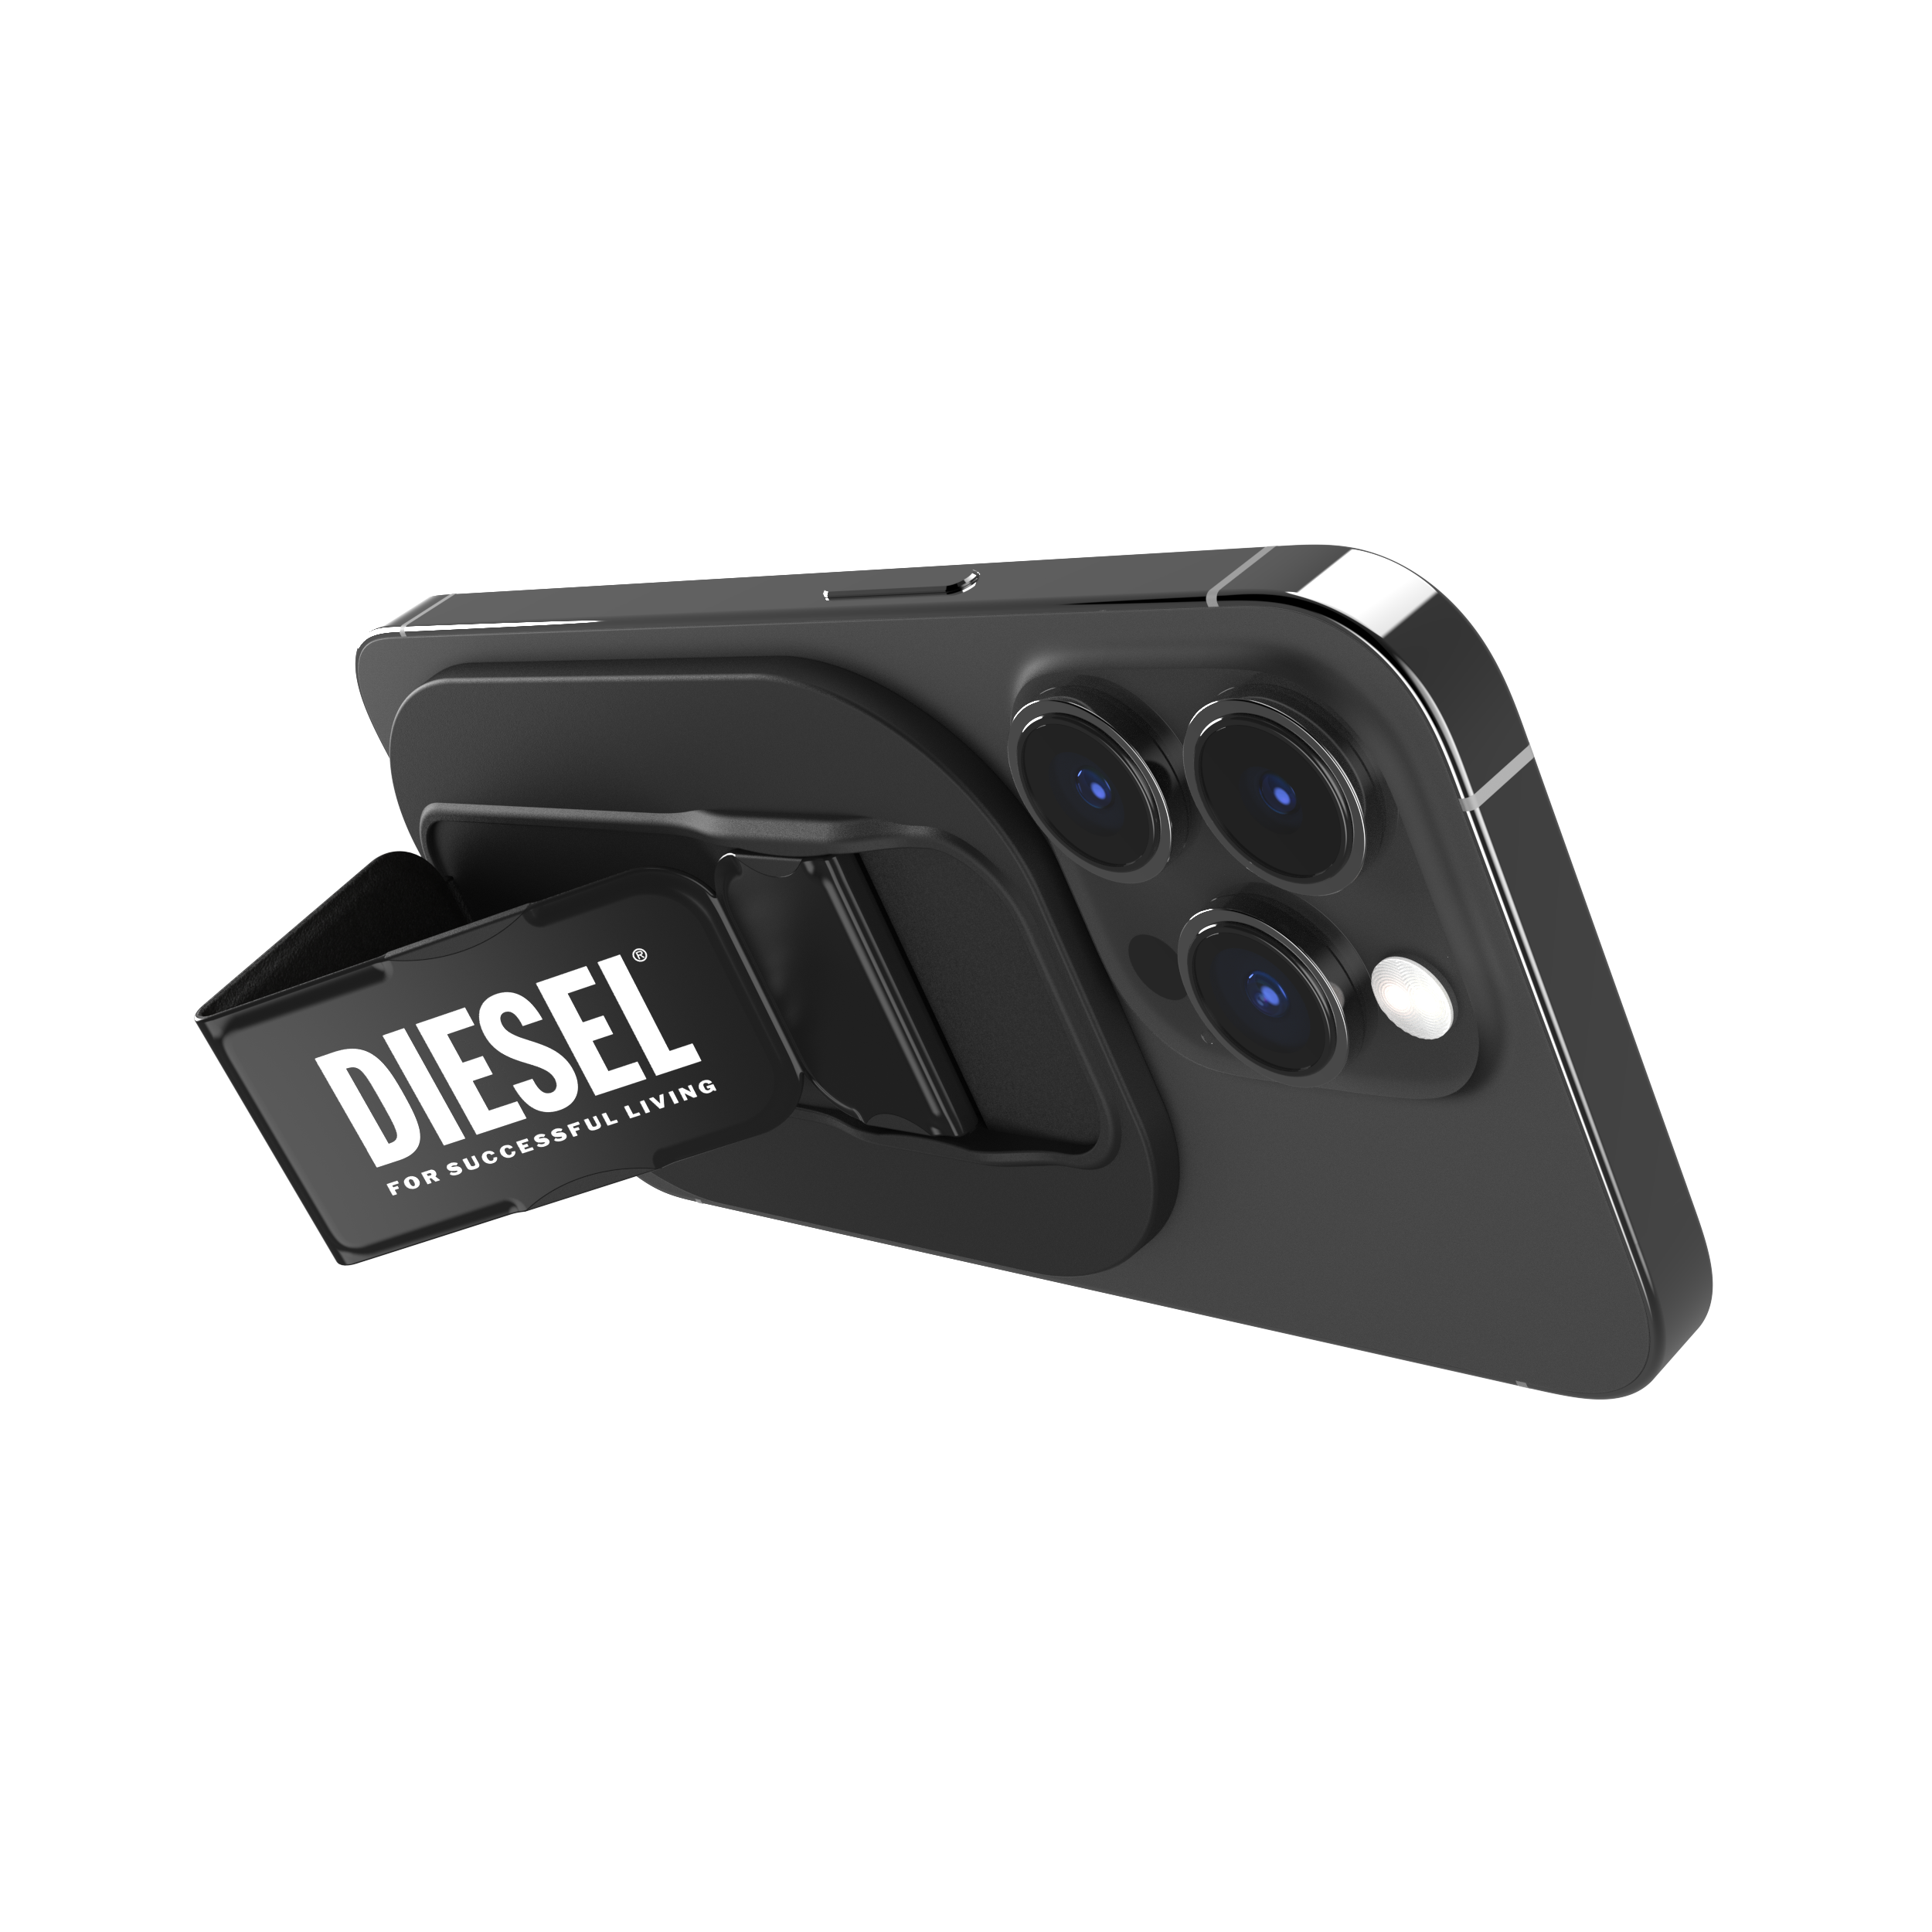 ที่ช่วยตั้งและจับมือถือ Diesel รุ่น Magsafe Universal Grip & Stand - สี Black/White